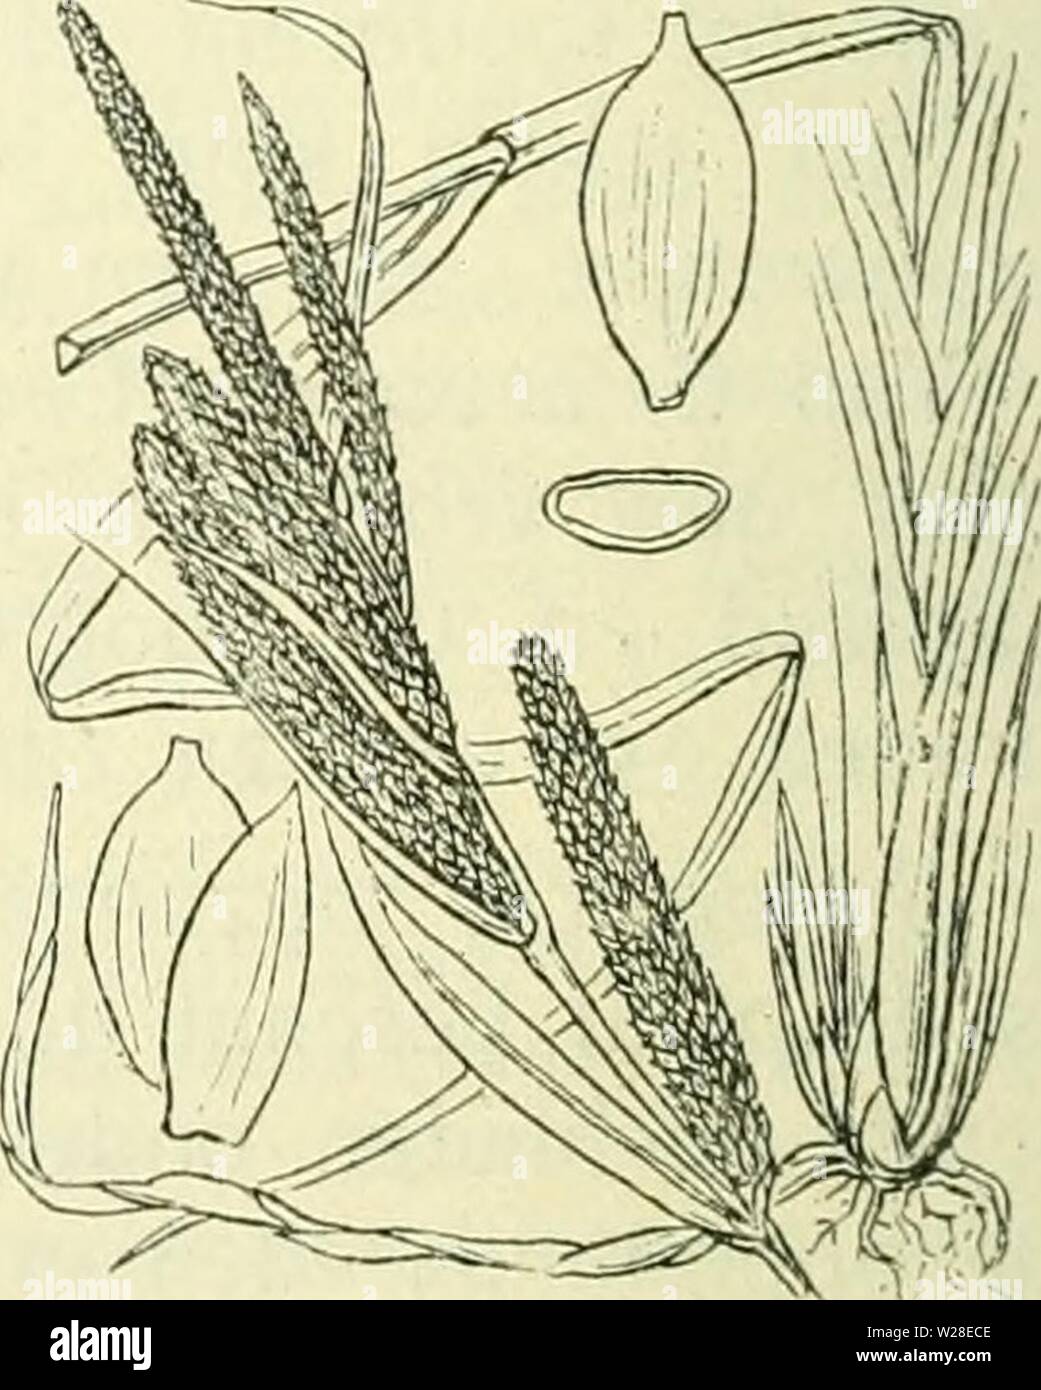 Archive image from page 433 of De flora van Nederland (1909-11). De flora van Nederland  defloravannederl01heuk Year: 1909-11.  Carex caespitosa Fig. 309. A B C D. Dealen der plant, / manne- lijke bloem met kafje, 2, 3 vrouwe- lijke bloemen met kafje, 4, 5 urntje met en zonder kafje, ti rijpe vructit. C. acütai) L. (C. gracilis-) Curt.). Scherpe zegge (fig. 310). Deze plant is meest grasgroen en kaal. Zij heeft een wortelstok met lange, kruipende uitloopers. De stengel is stijf rechtopstaand, aan den top reeds voor den bloeitijd overgebogen. scherpkantig, ver naar beneden ruw. De onderste blad Stock Photo